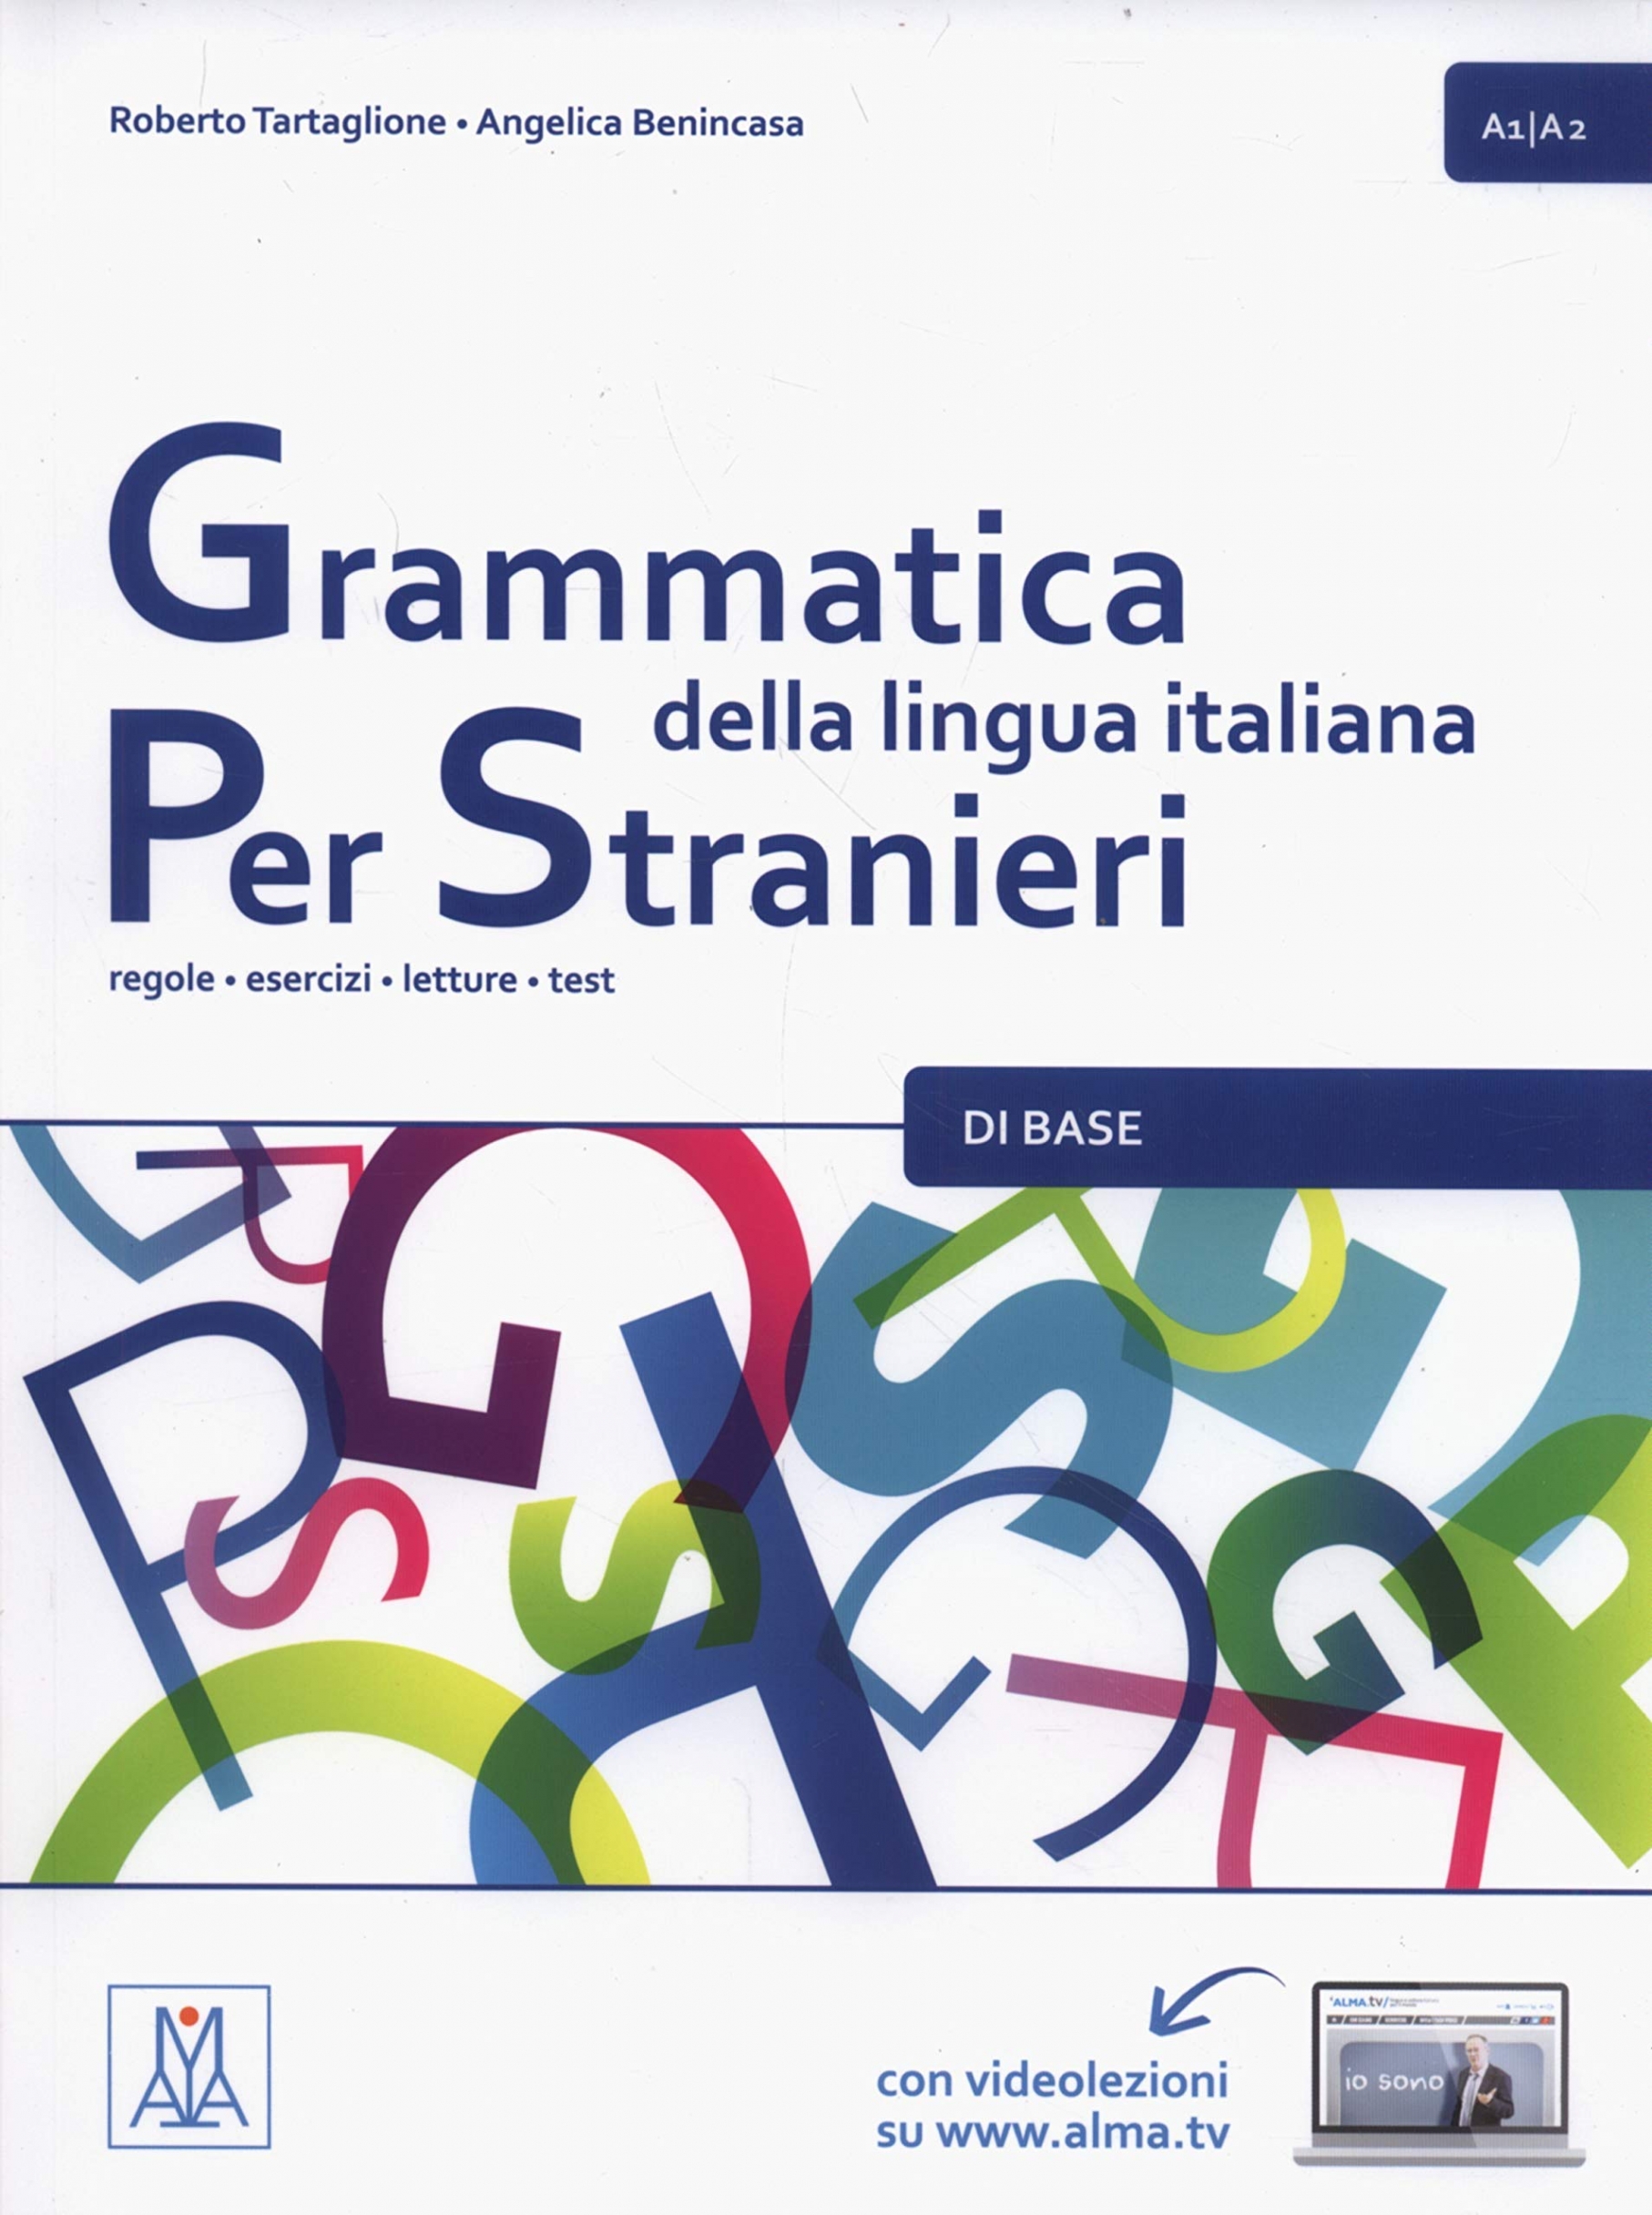 Tartaglione, Benincasa Grammatica della lingua italiana Per Stranieri - 1 